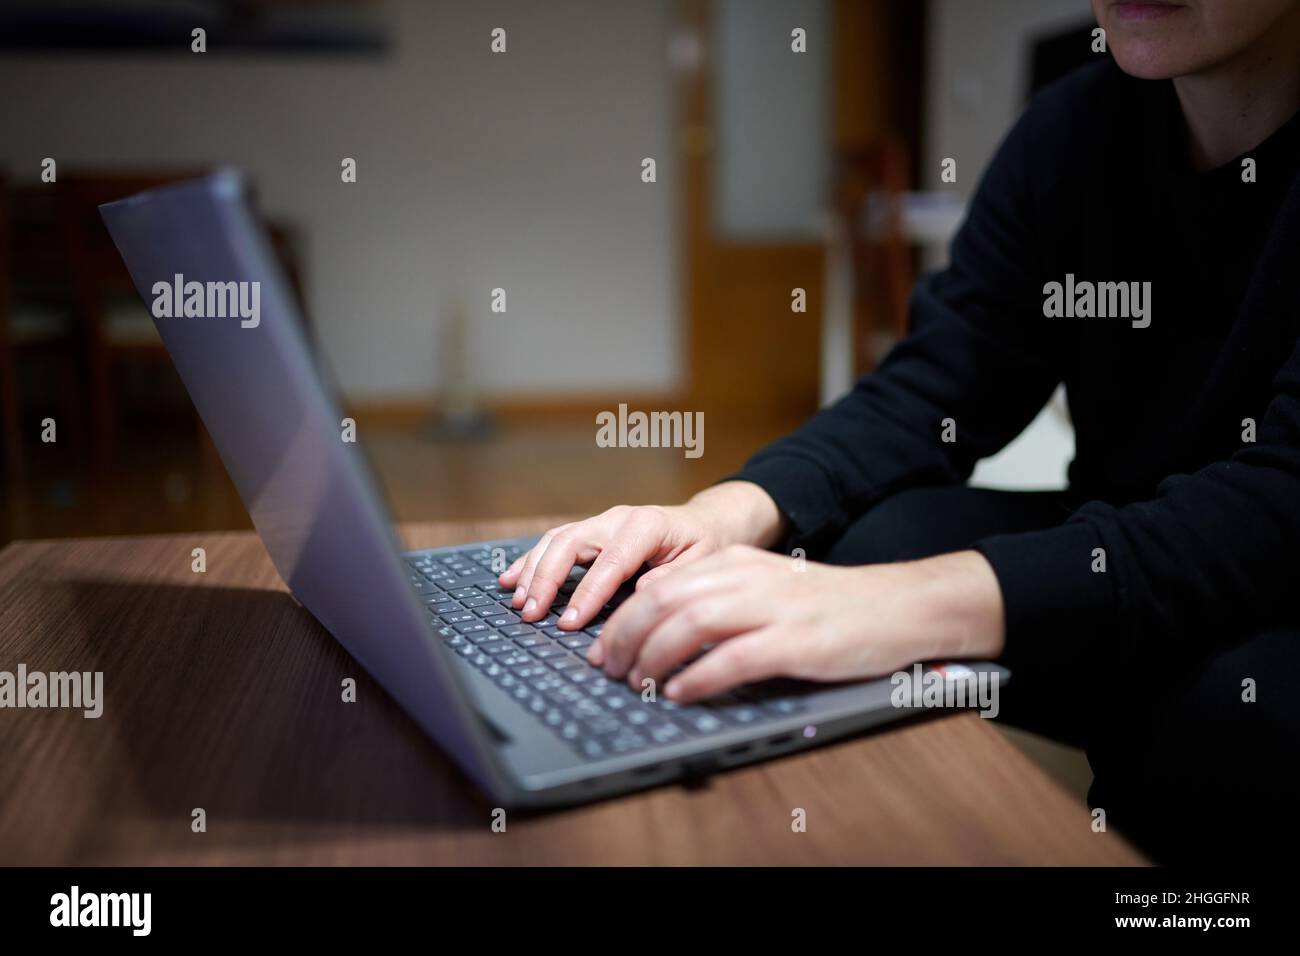 Gros plan d'une personne utilisant un ordinateur portable Banque D'Images